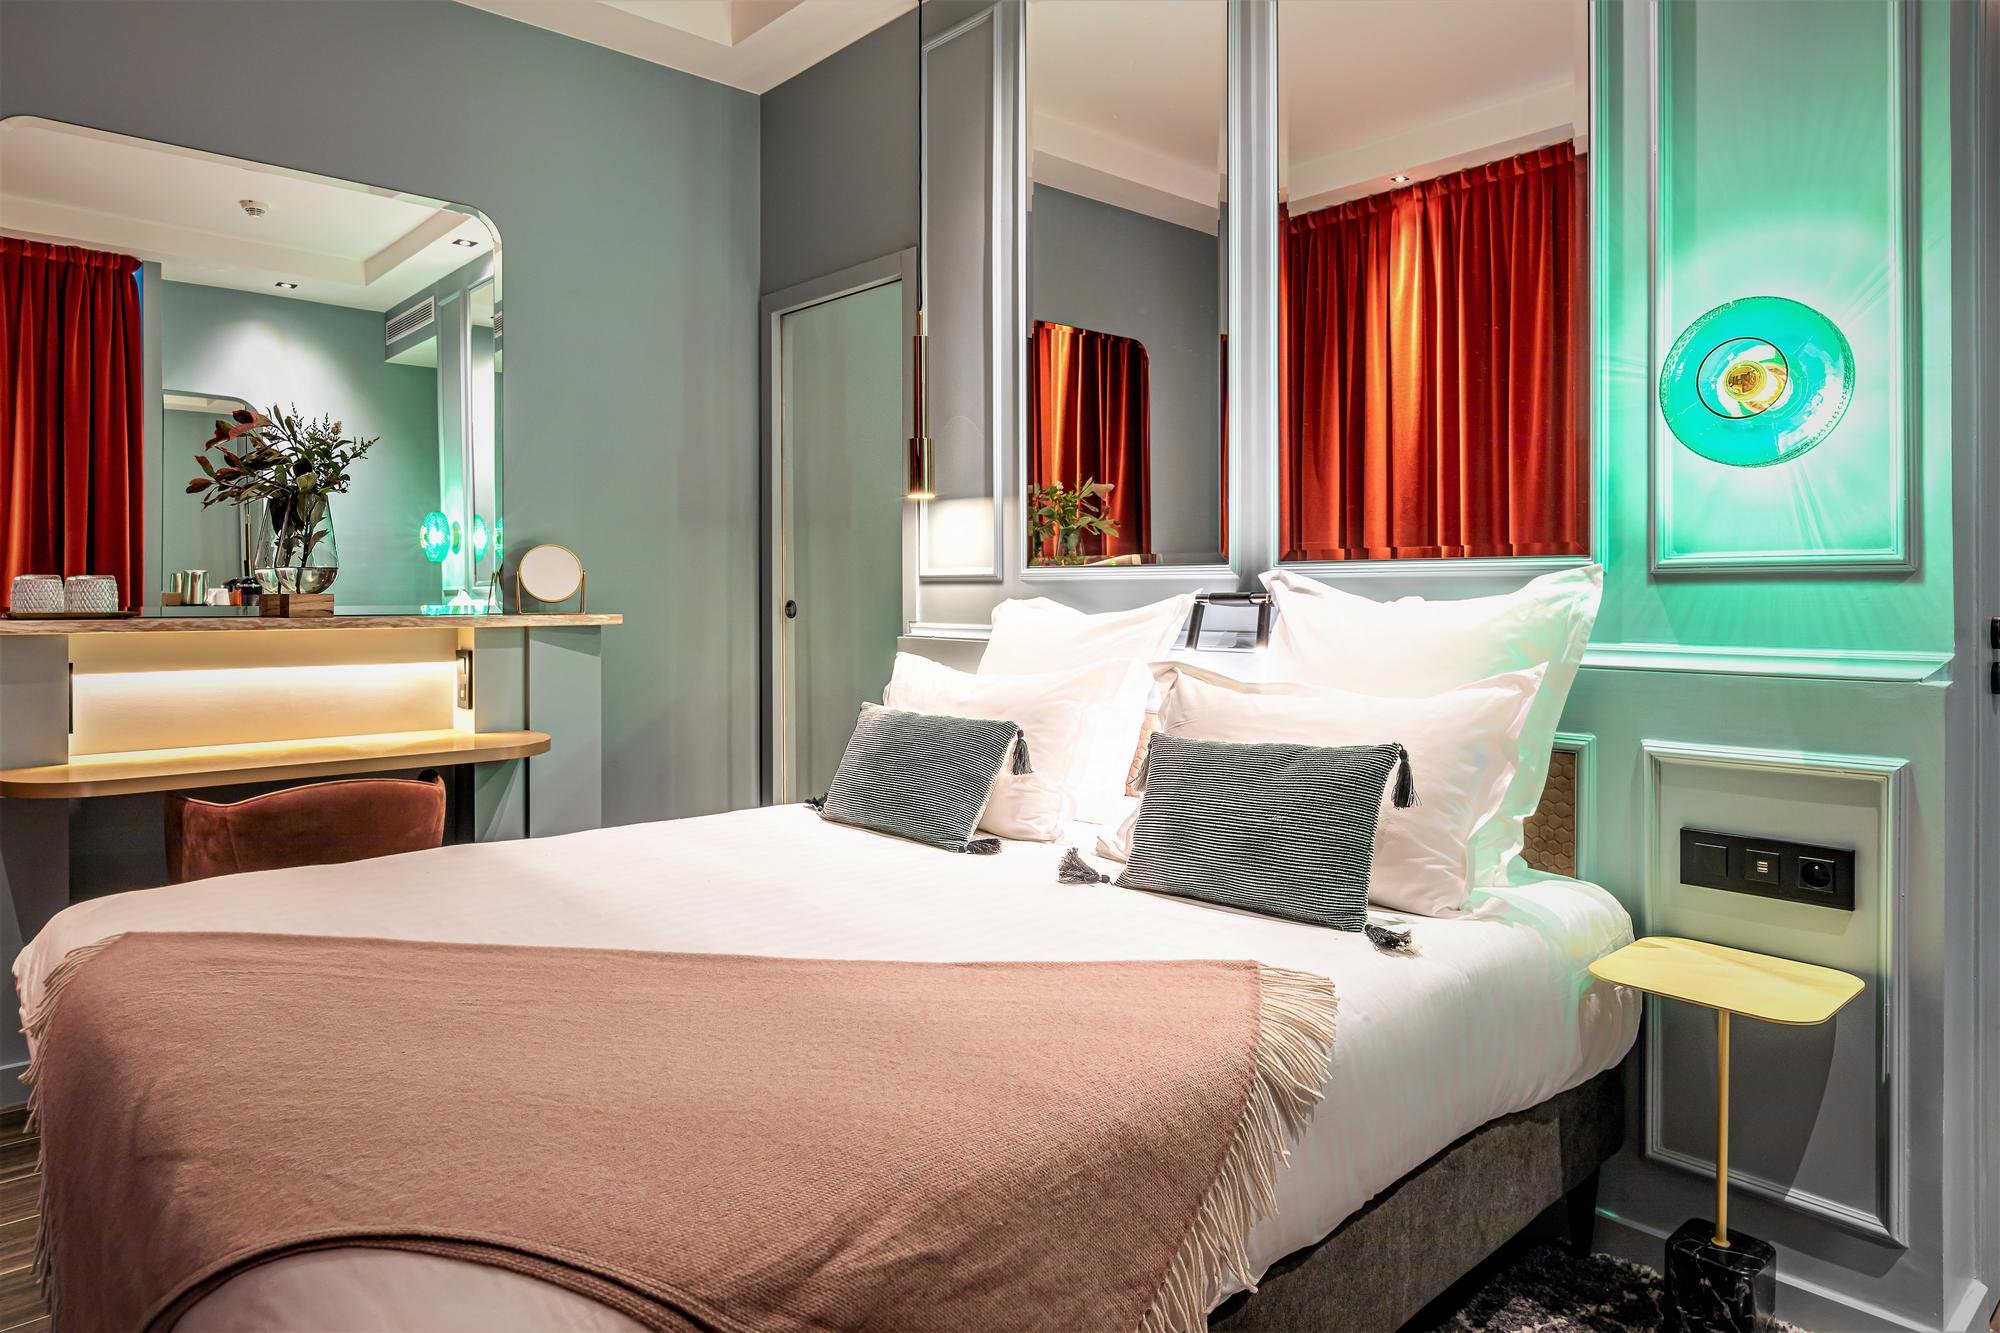 Hôtel Veryste - Verydouce Room - Bed